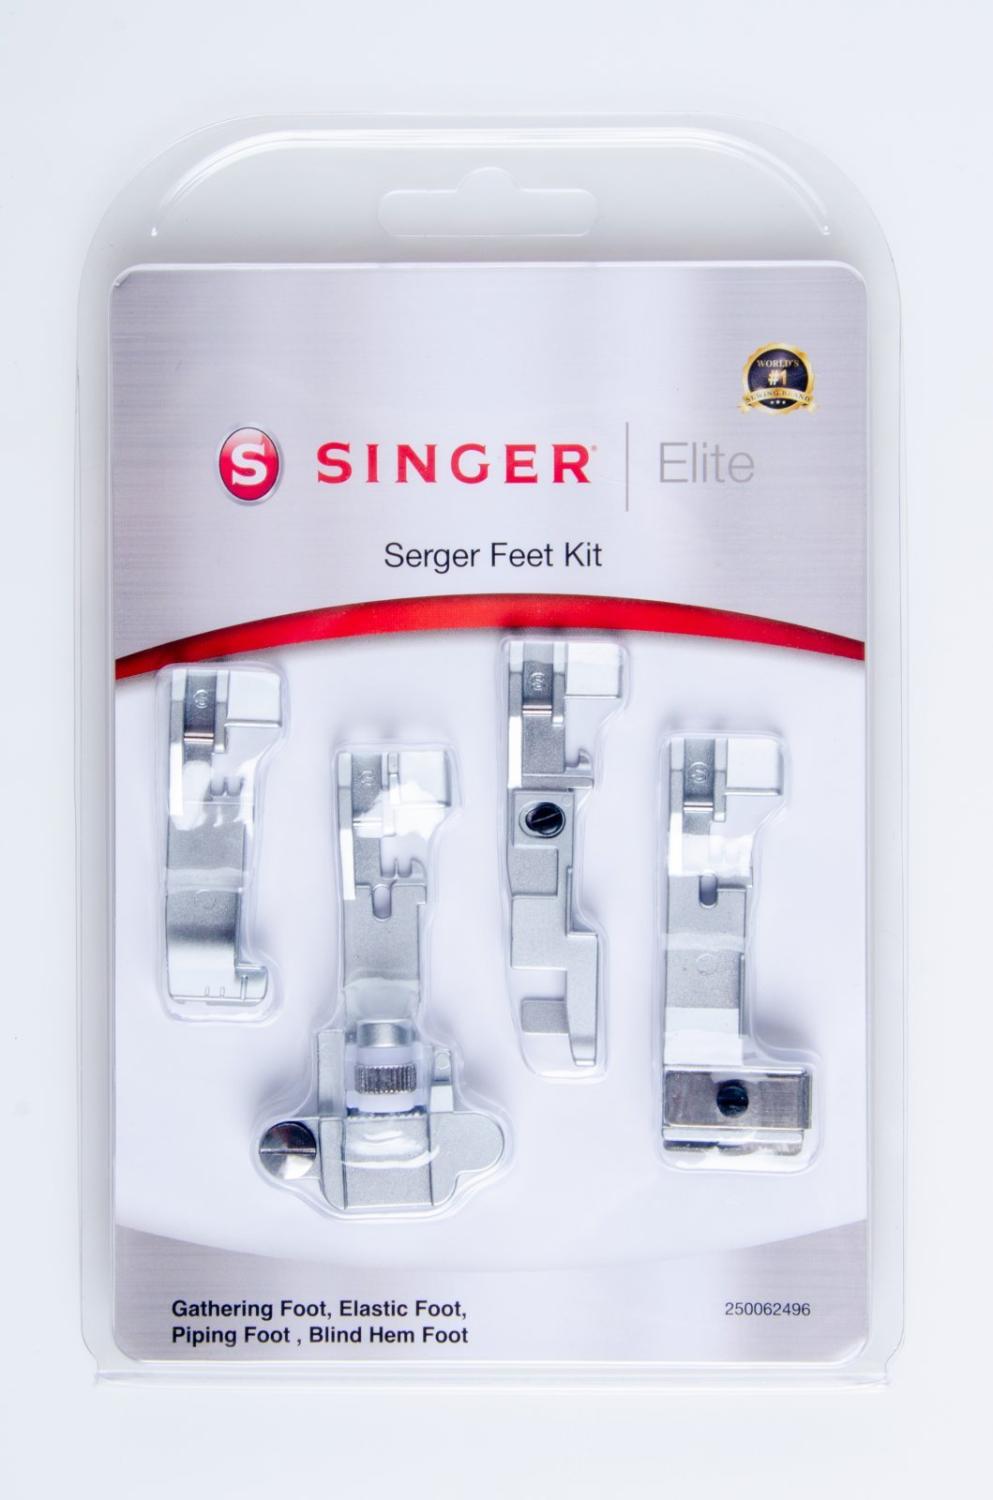 Singer Elite Serger Feet Kit